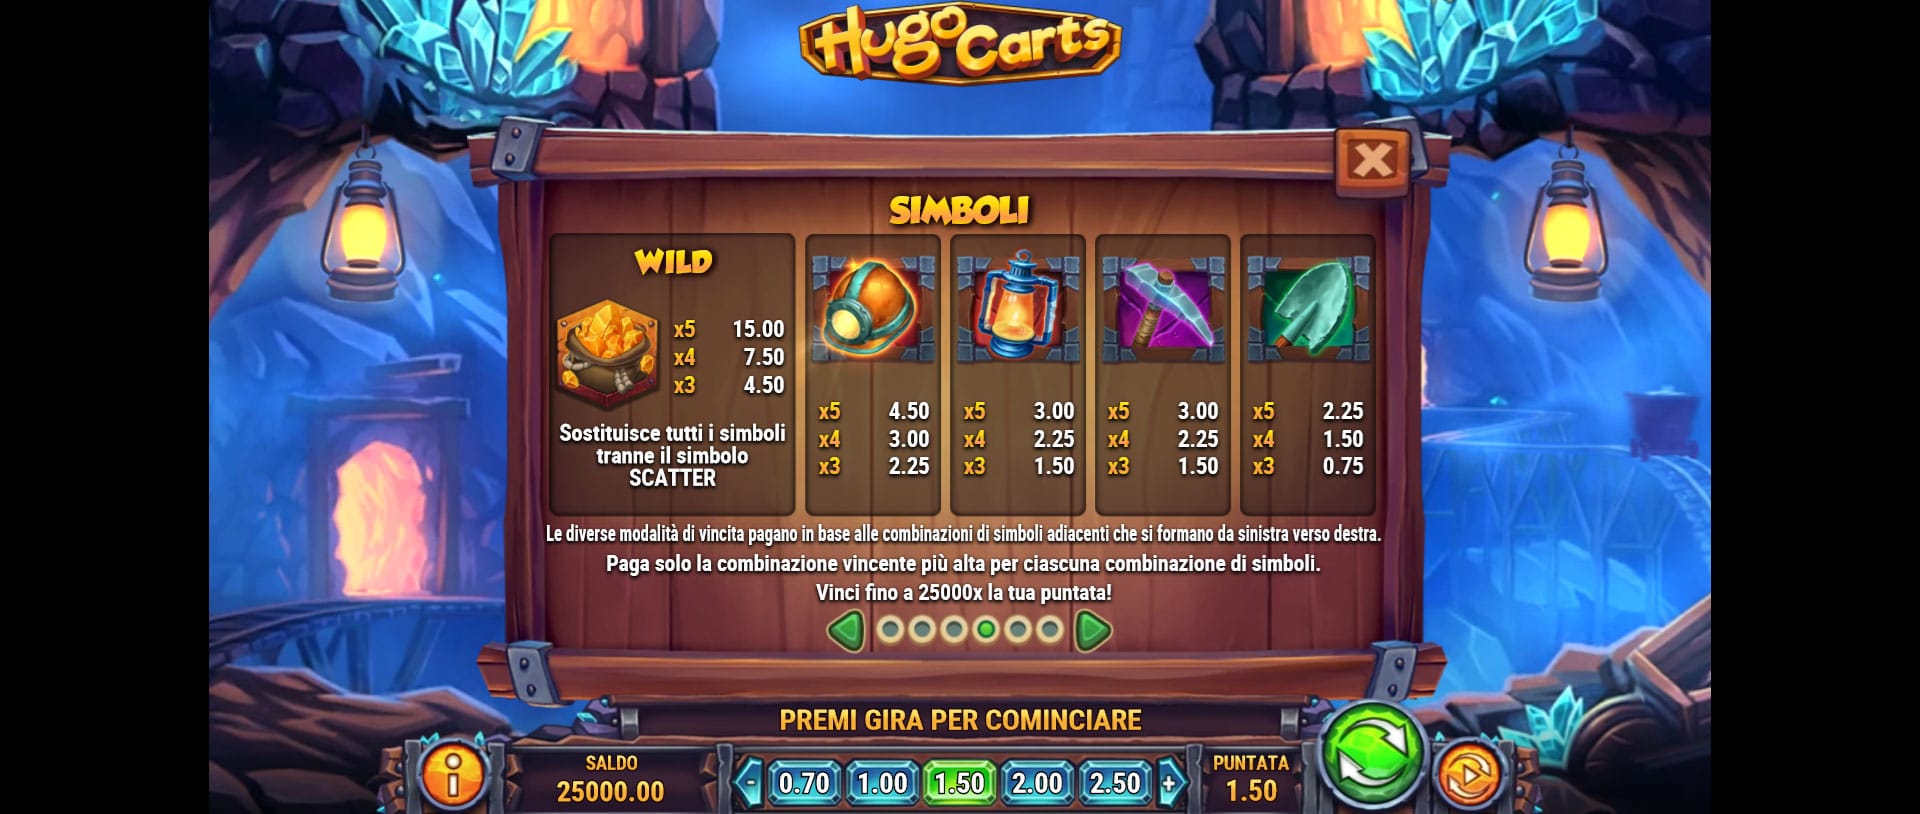 tabella dei simboli della slot online hugo carts